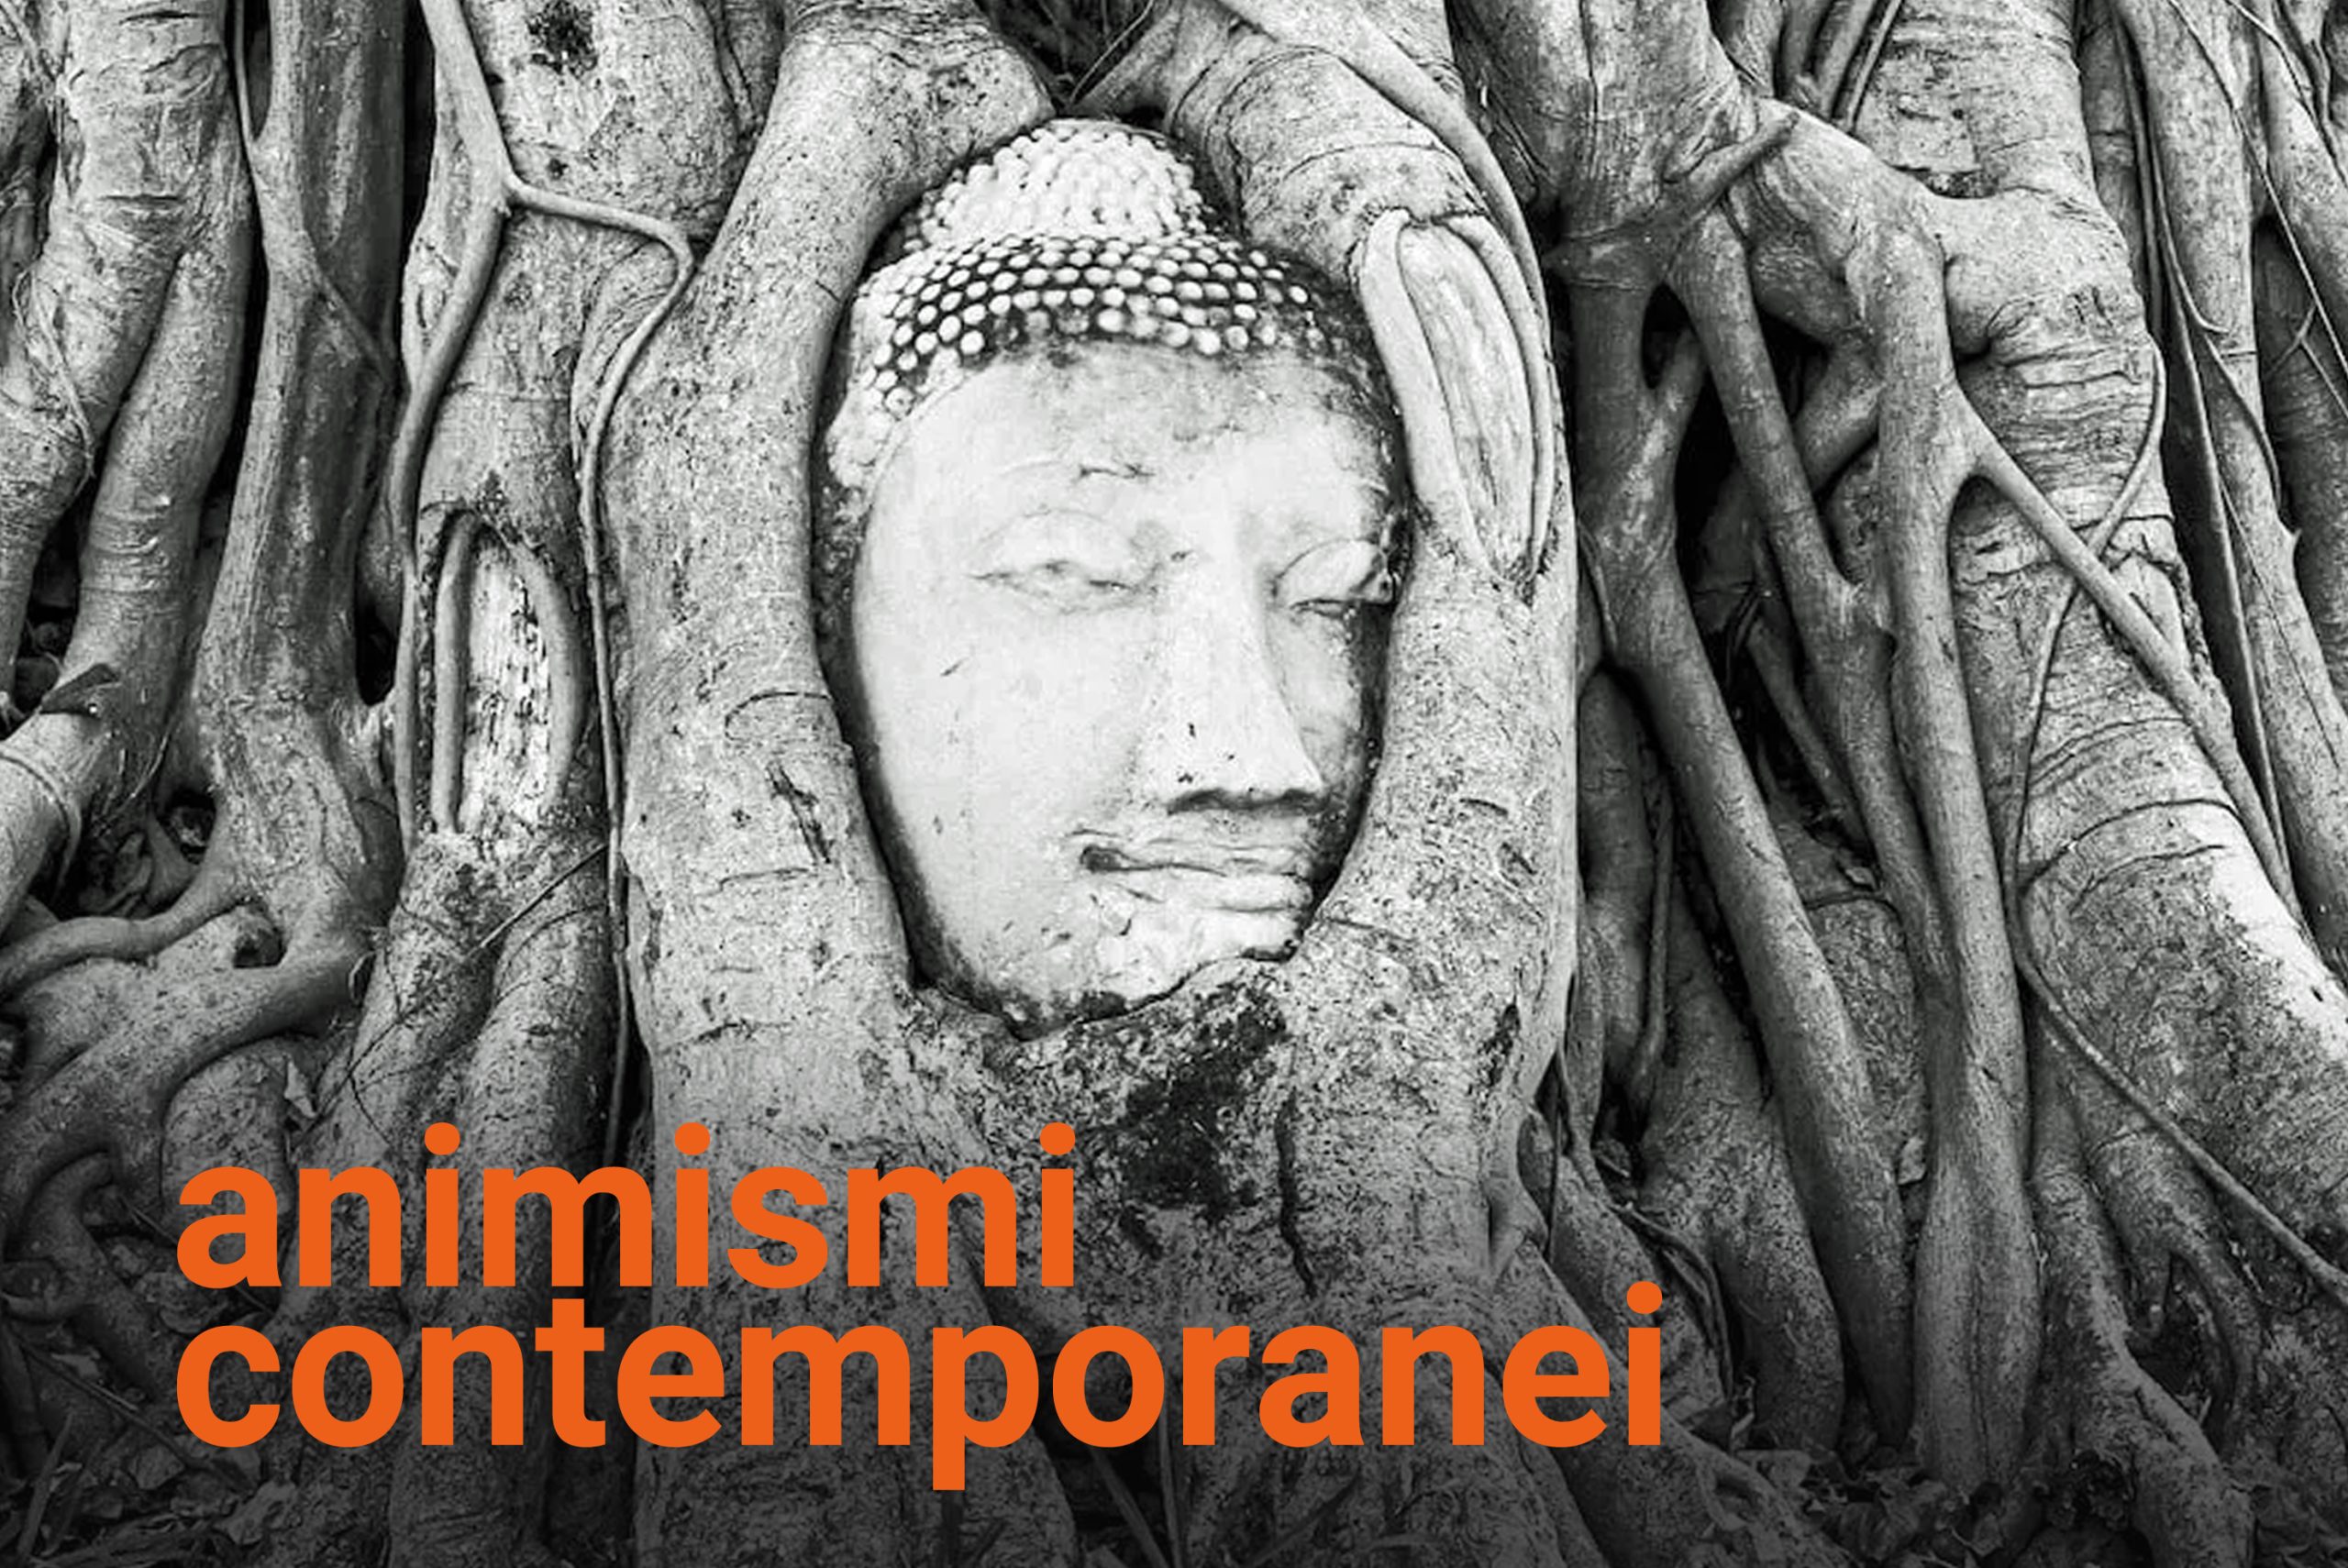 www.novantatrepercento.it n.33 "animismo contemporaneo", in foto: testa di Buddha incastonata in un albero di Banyan, Ayutthaya, Tailandia